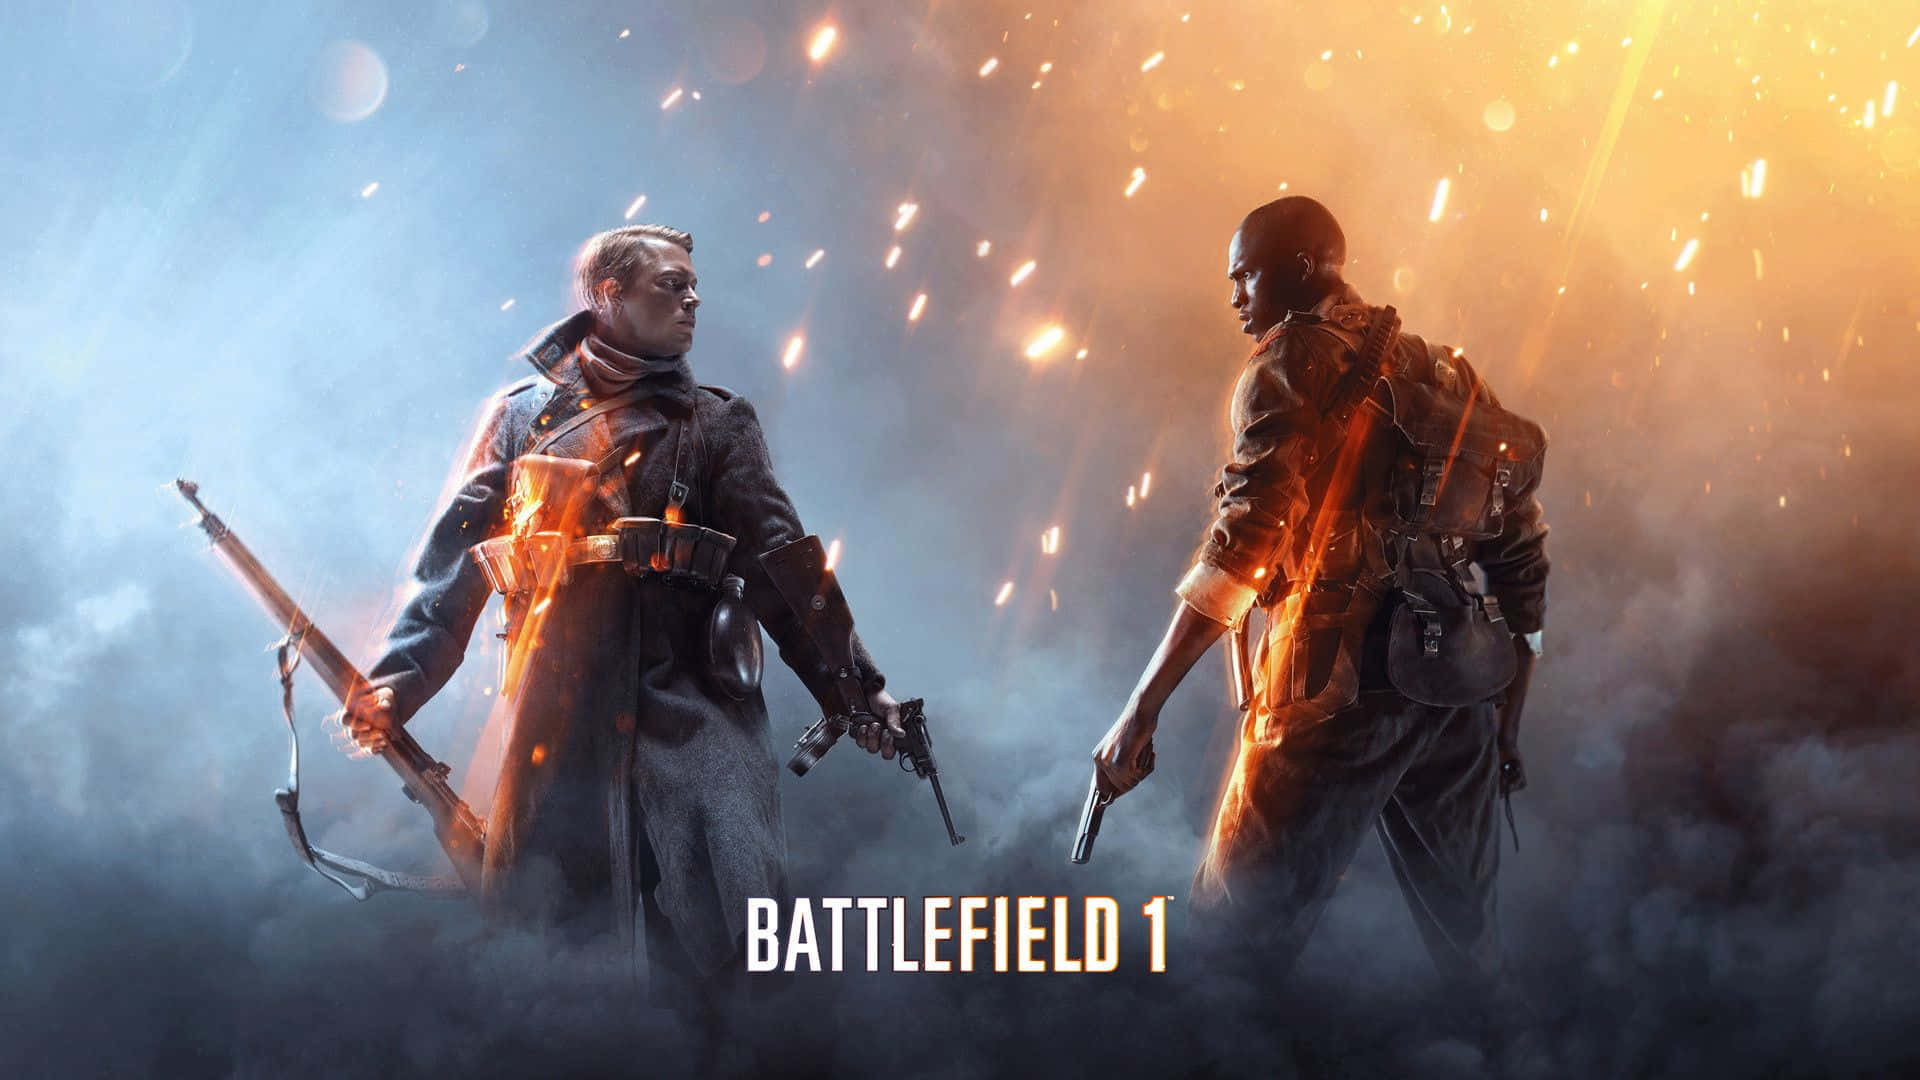 $ A battlefield of epic proportions unfolds in Battlefield 1